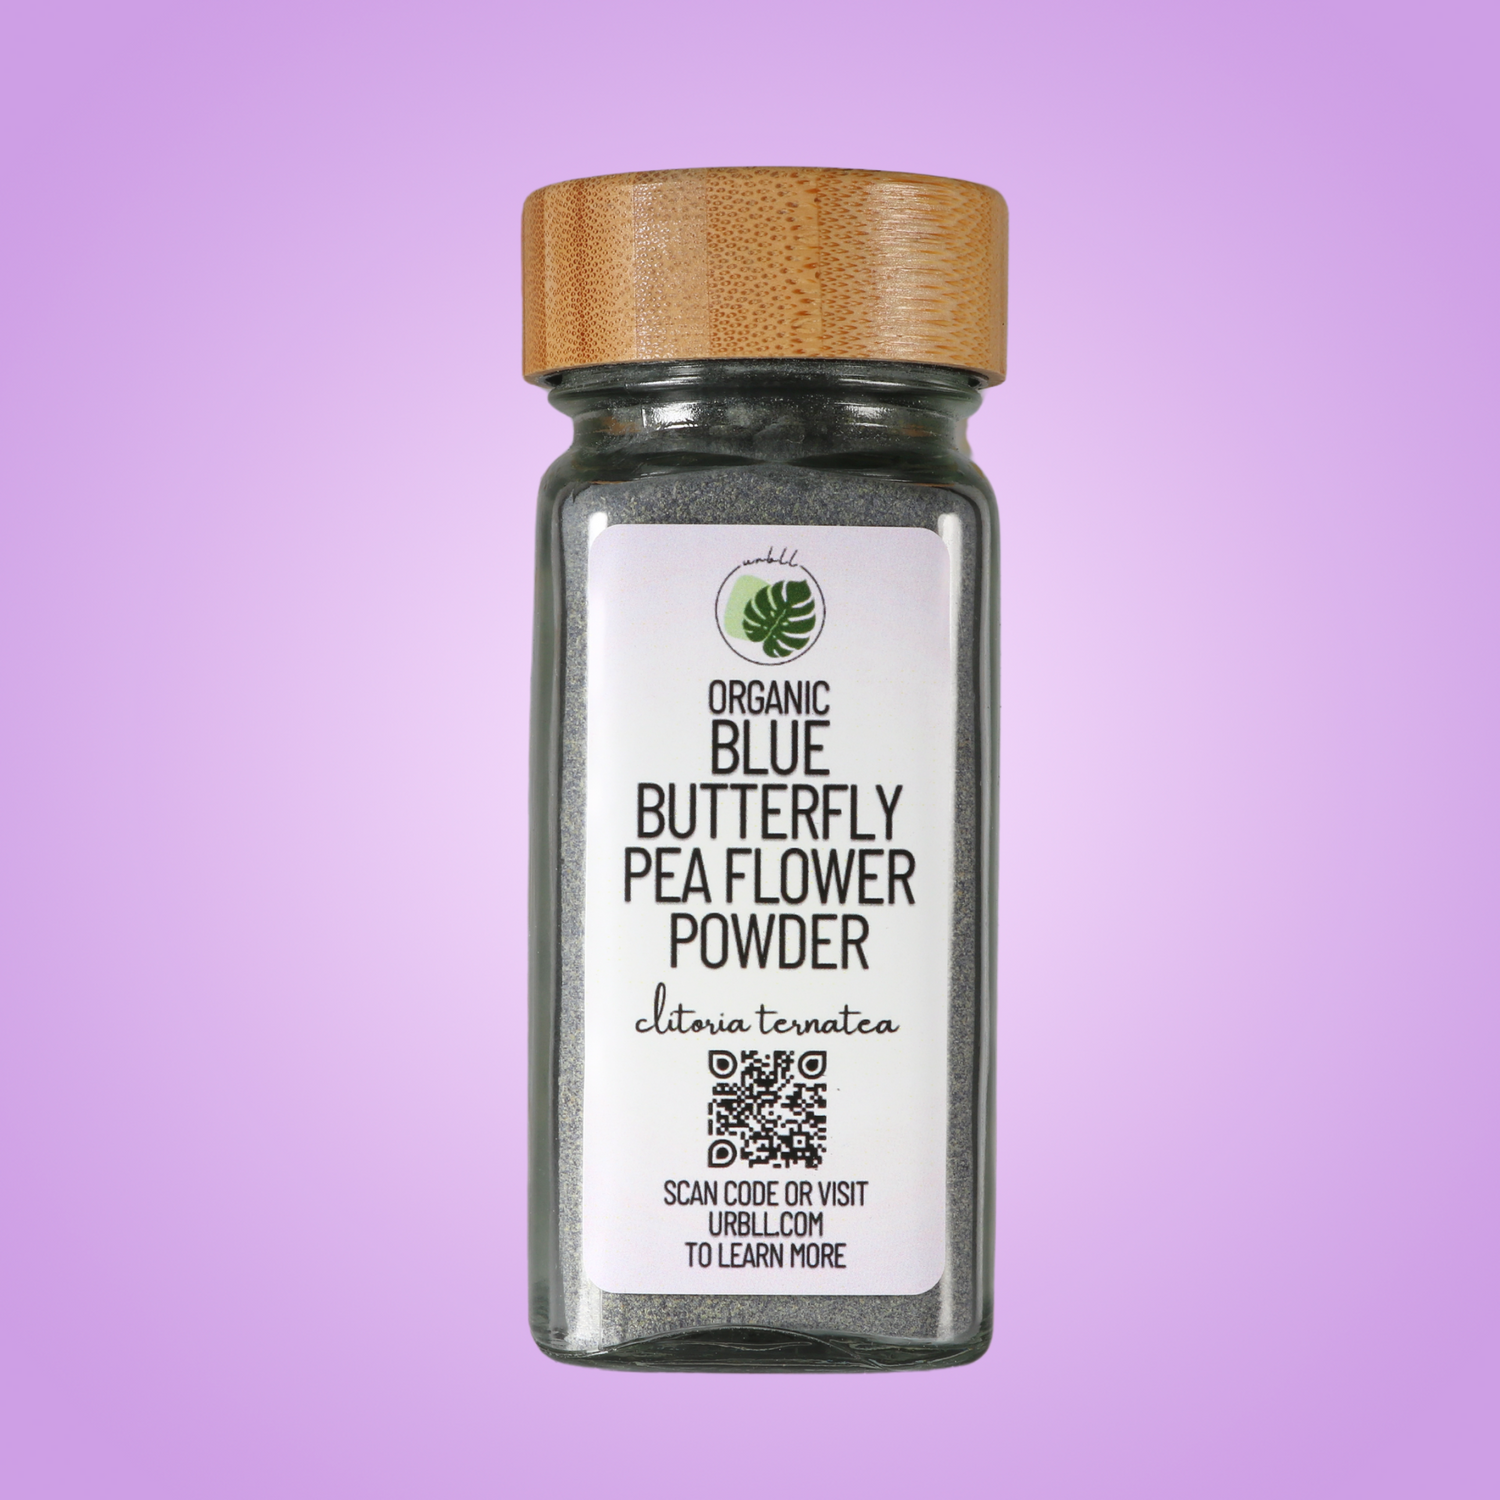 Herbal Powders